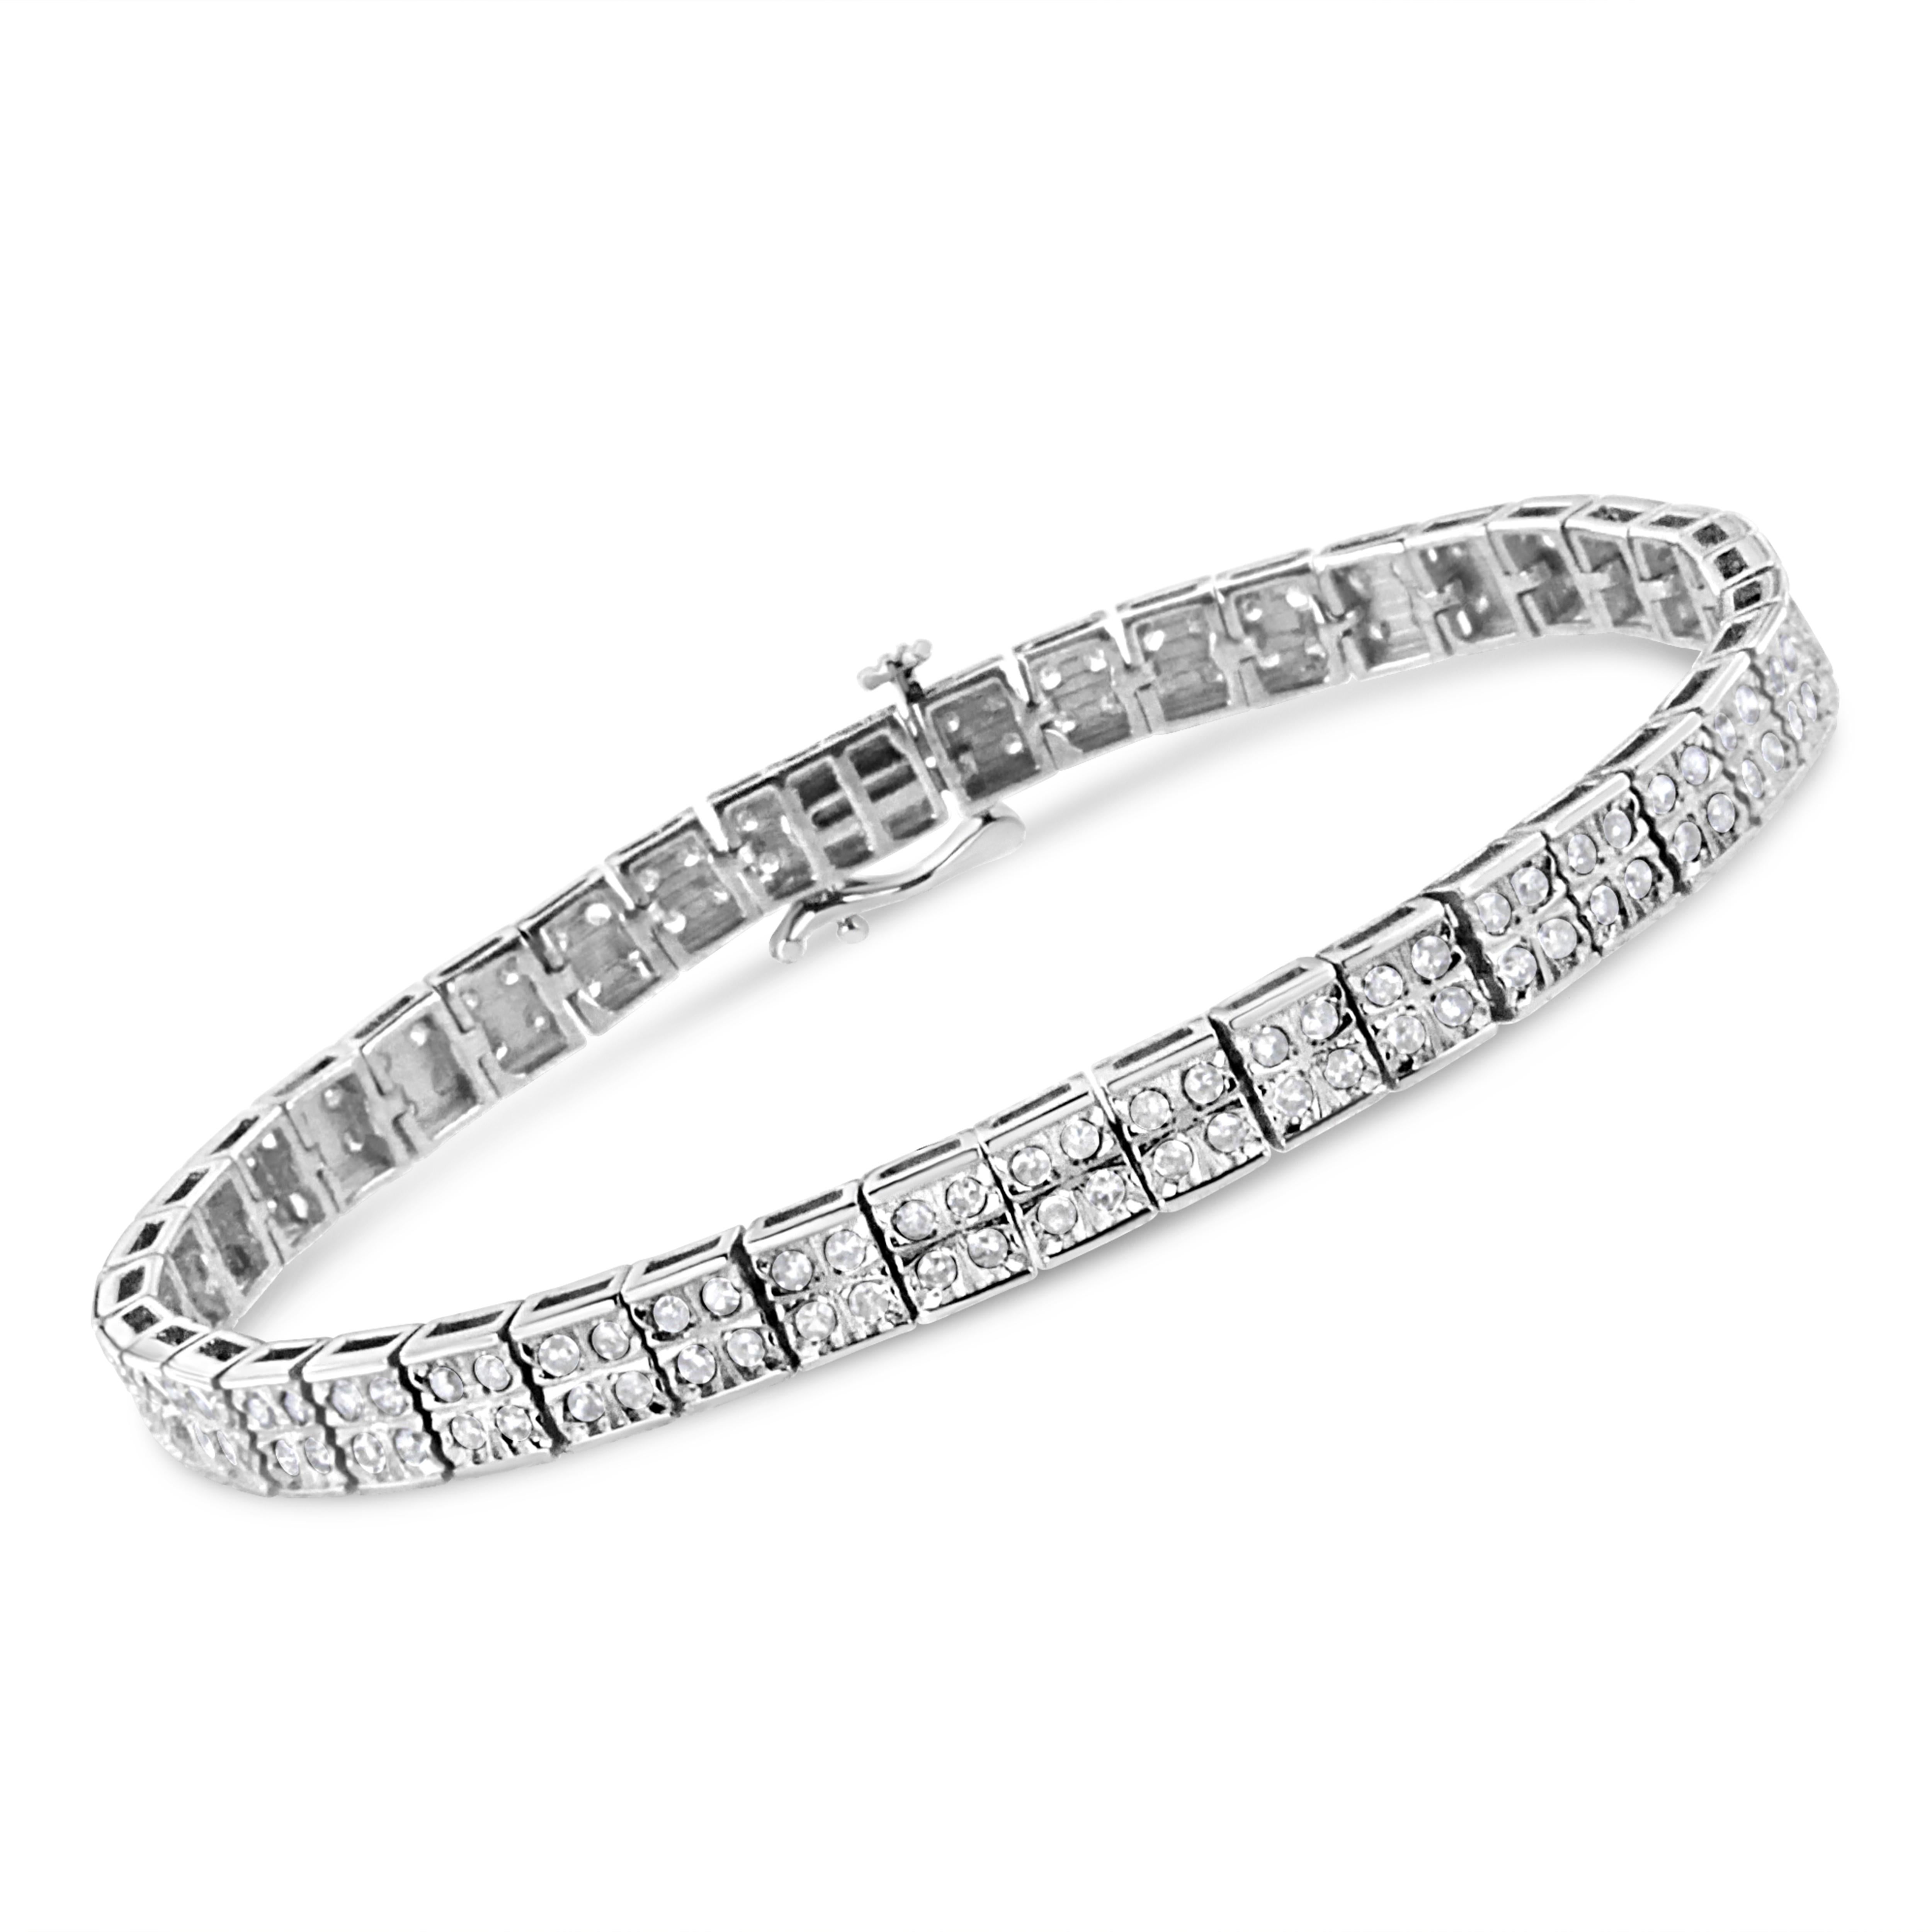 Dieses wunderschöne Gliederarmband ist eine glamouröse Variante eines klassischen Designs. Die quadratischen Silberglieder sind mit vier atemberaubenden Diamanten im Rundschliff in einer eleganten Zackenfassung geschmückt. Dieses authentische Design